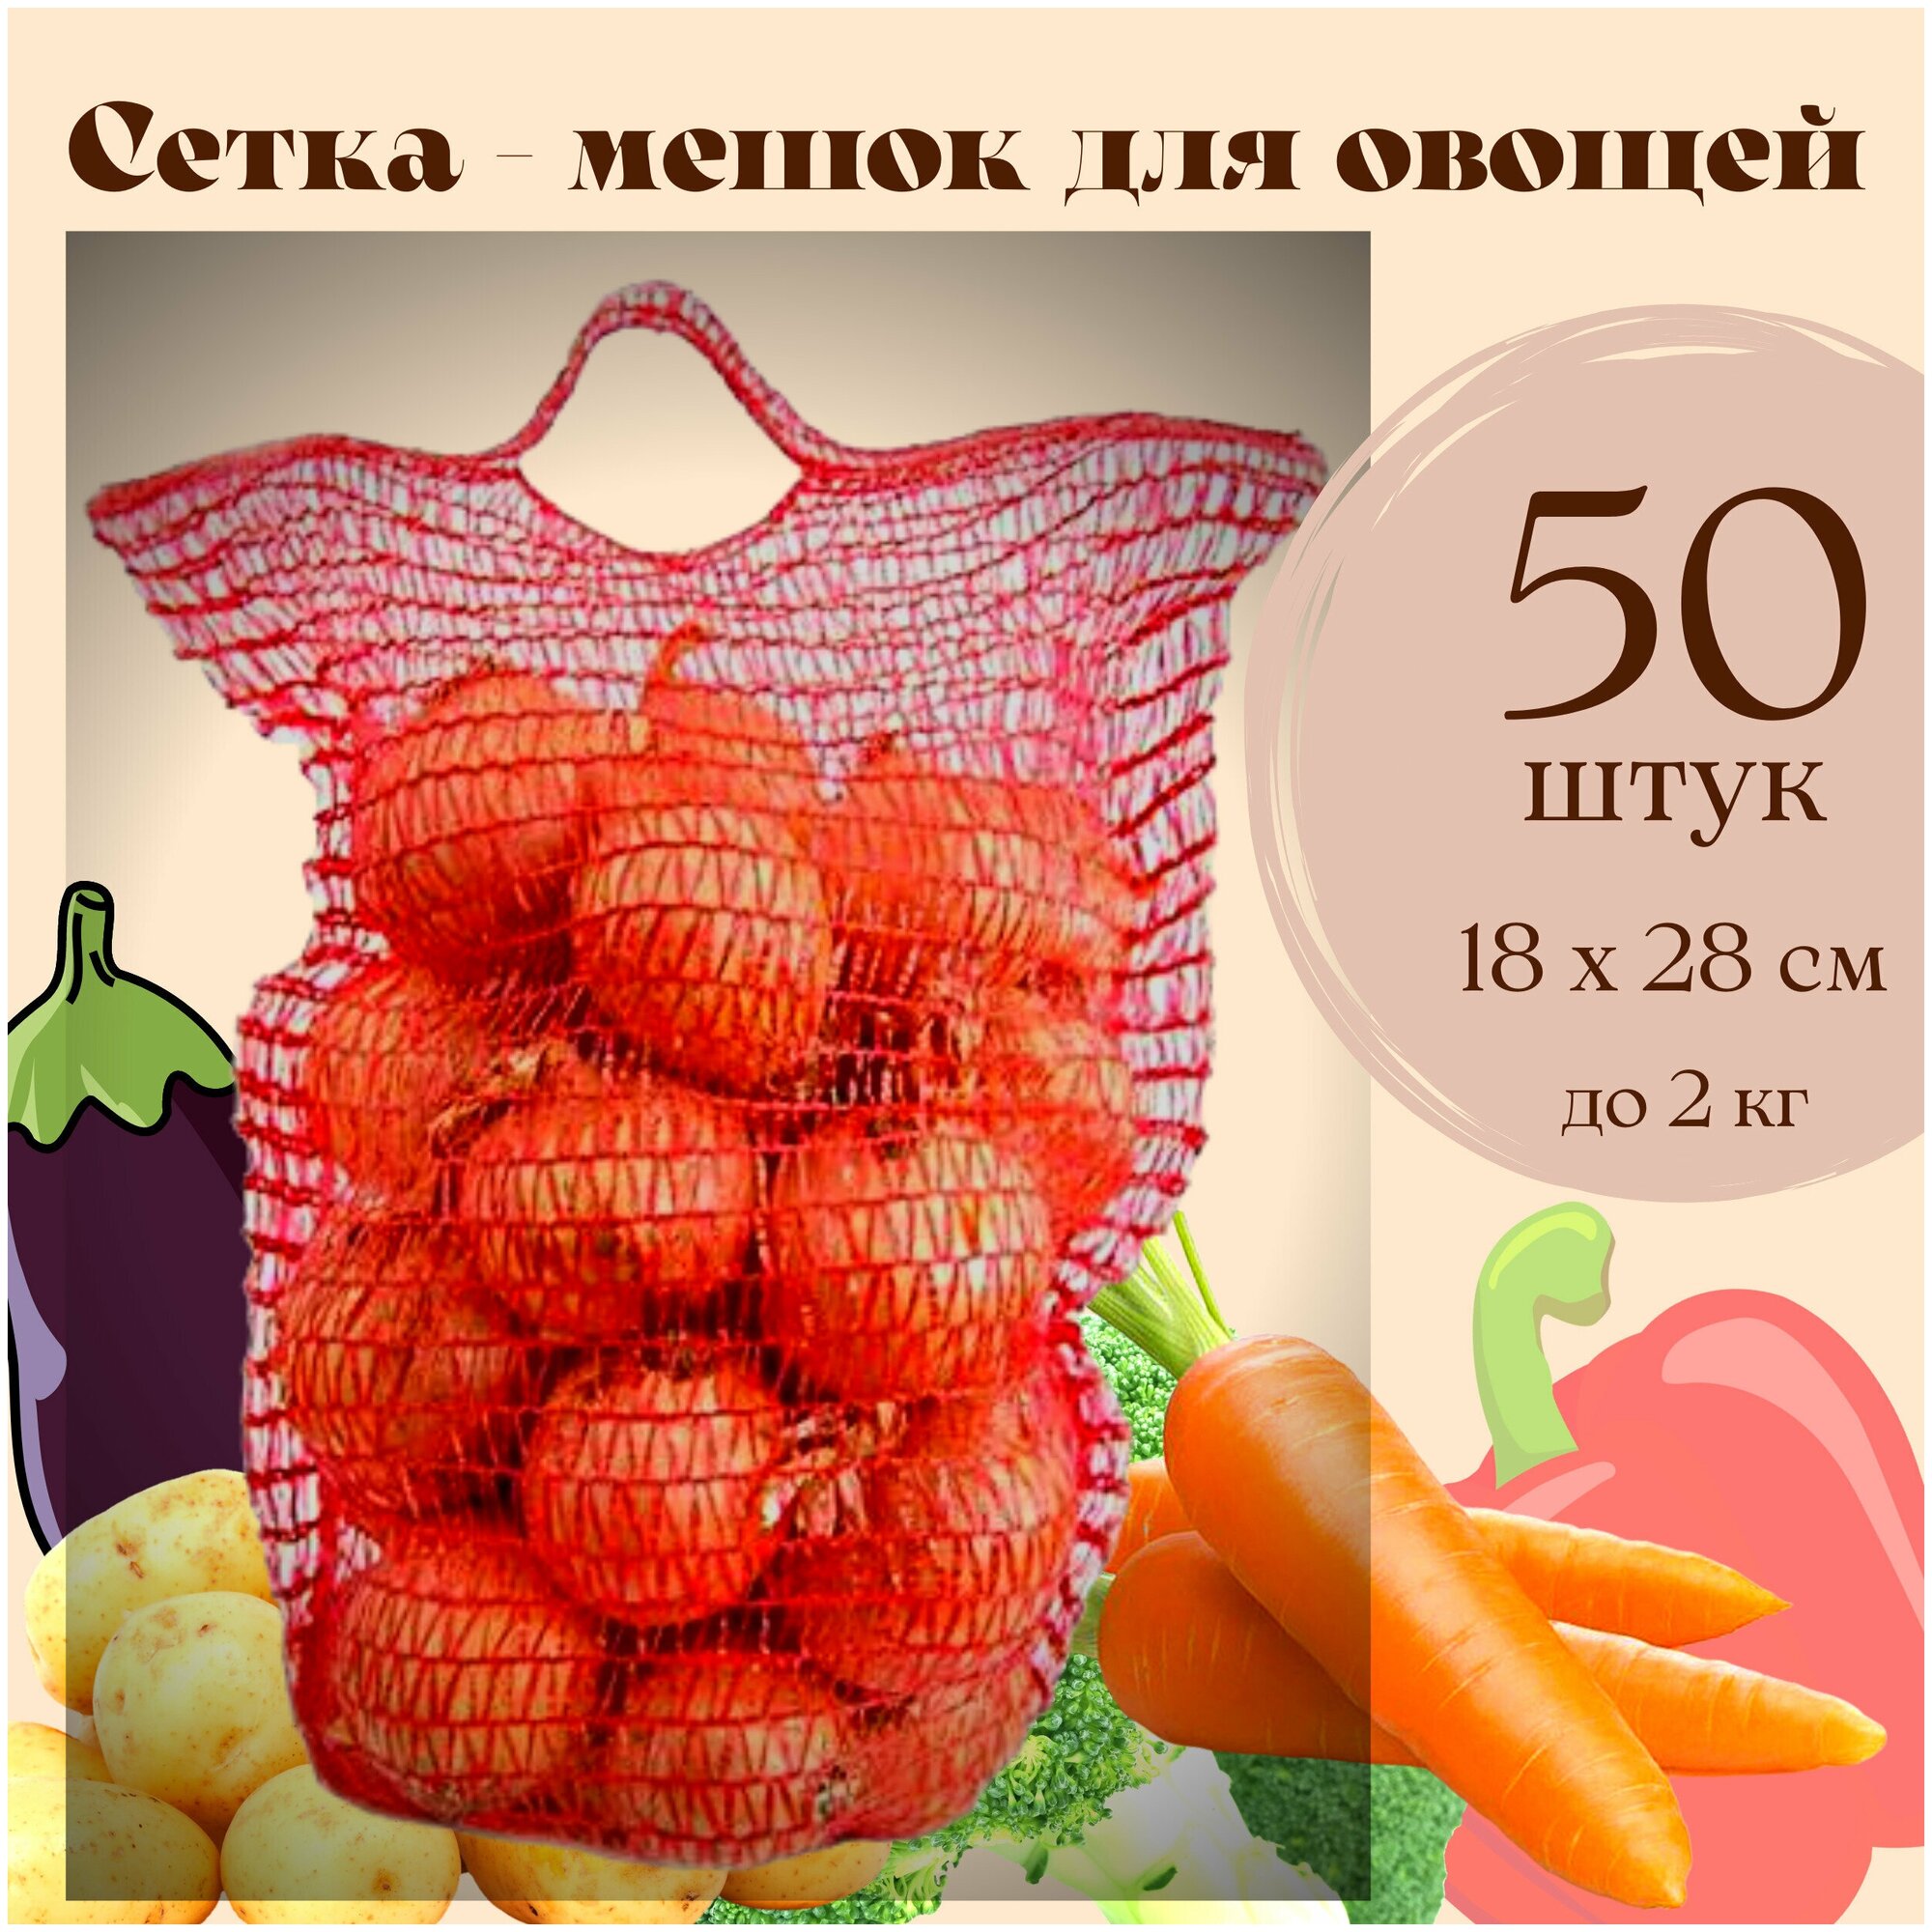 Сетка - Мешок для овощей до 2 кг для урожая и хранения картошки лука моркови яблок с завязками 18 х 28 50 штук